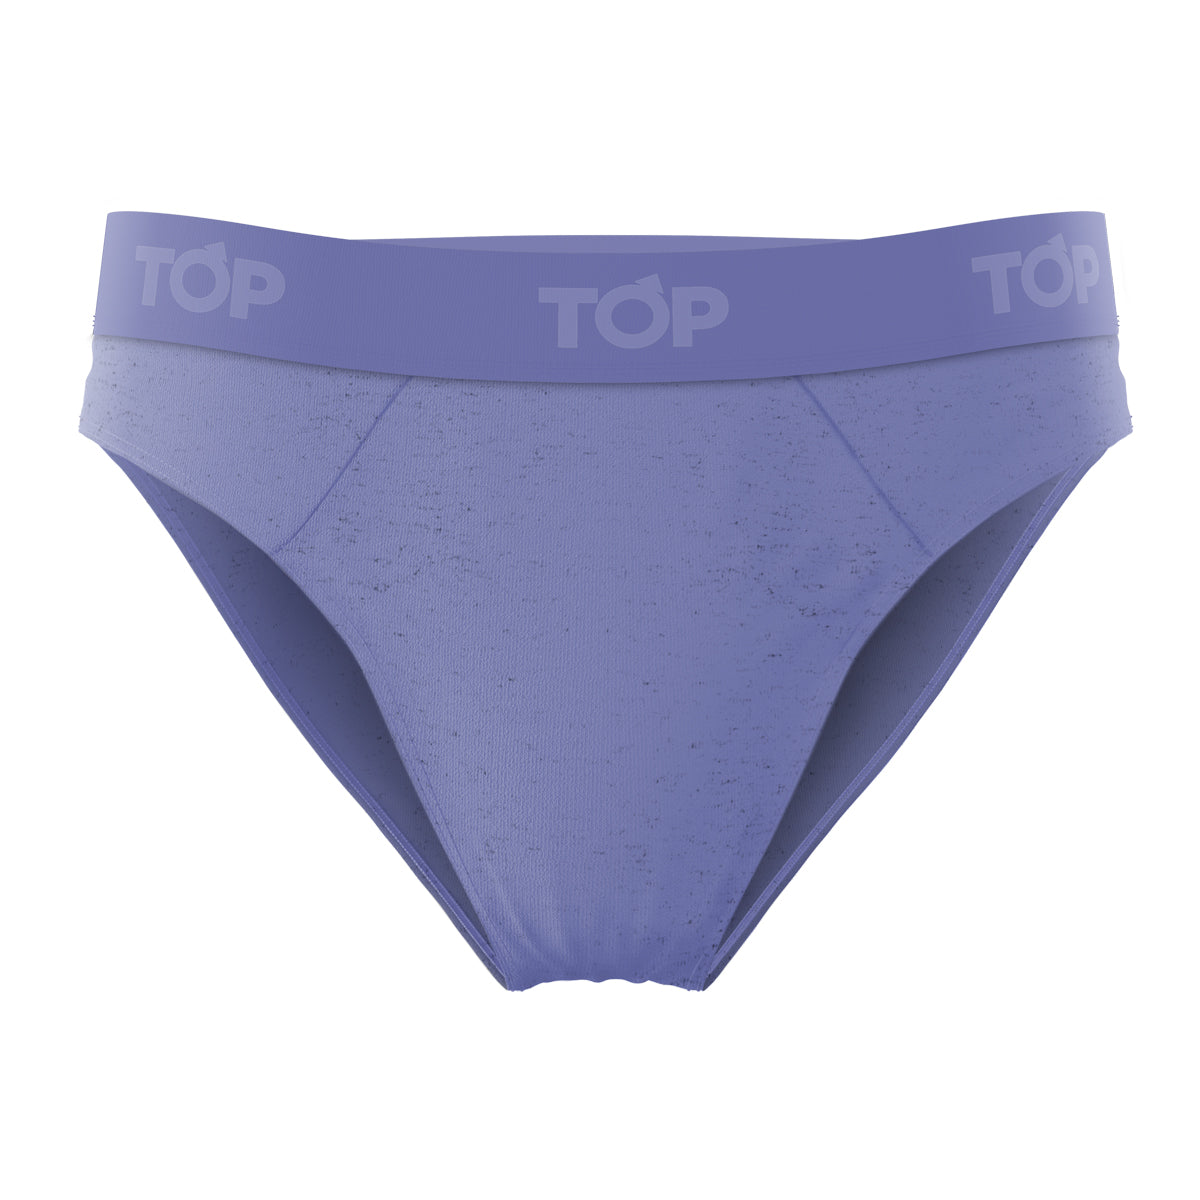 Top Underwear - El slip 511 Classic es una alternativa para quienes gustan  de colores más tradicionales